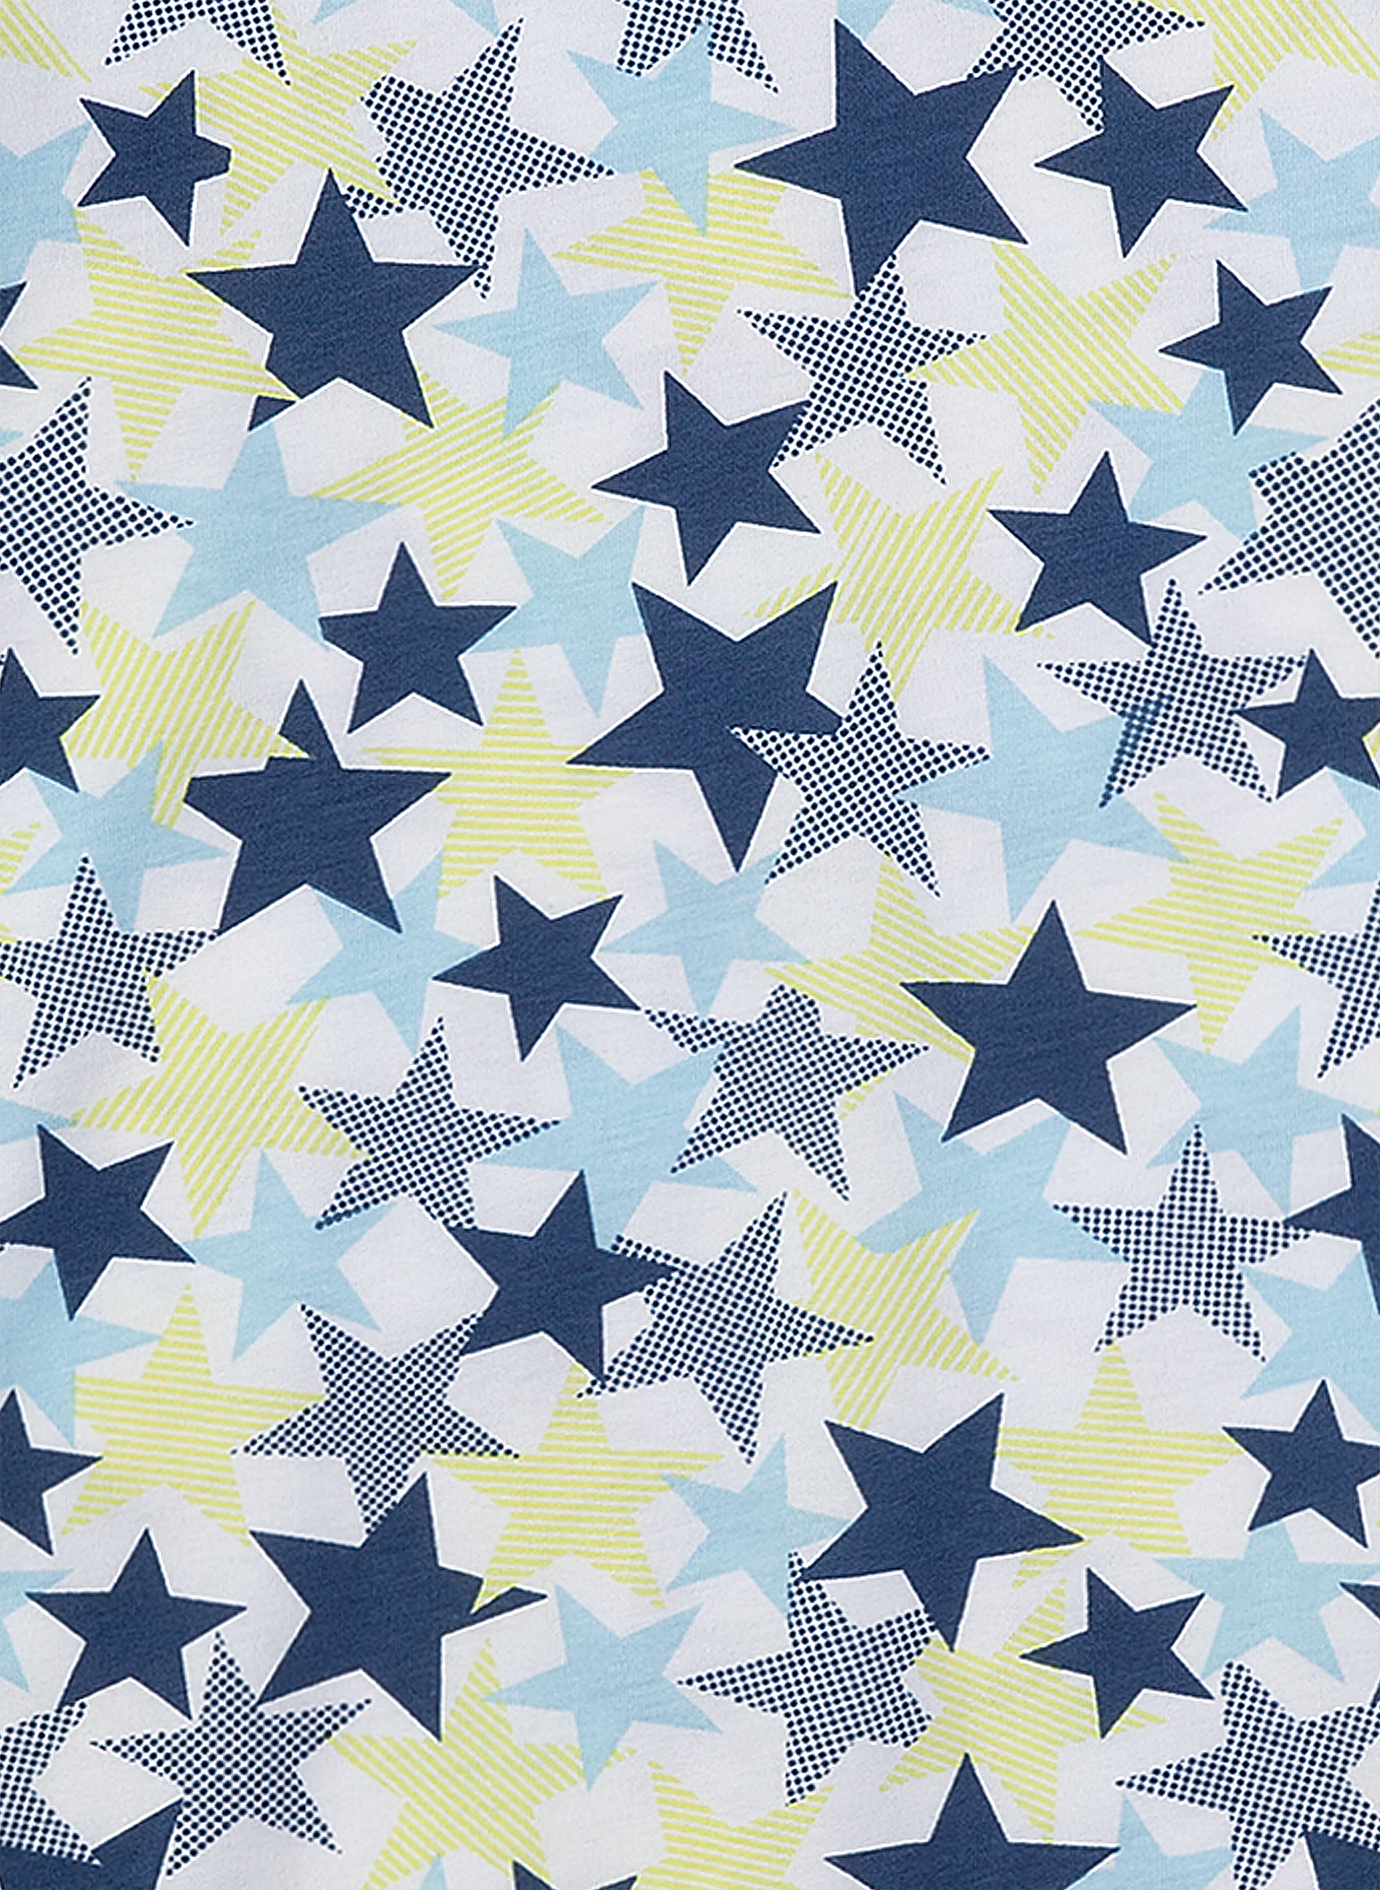 Mädchen-Nachthemd Sternen-Allover Starry Nights